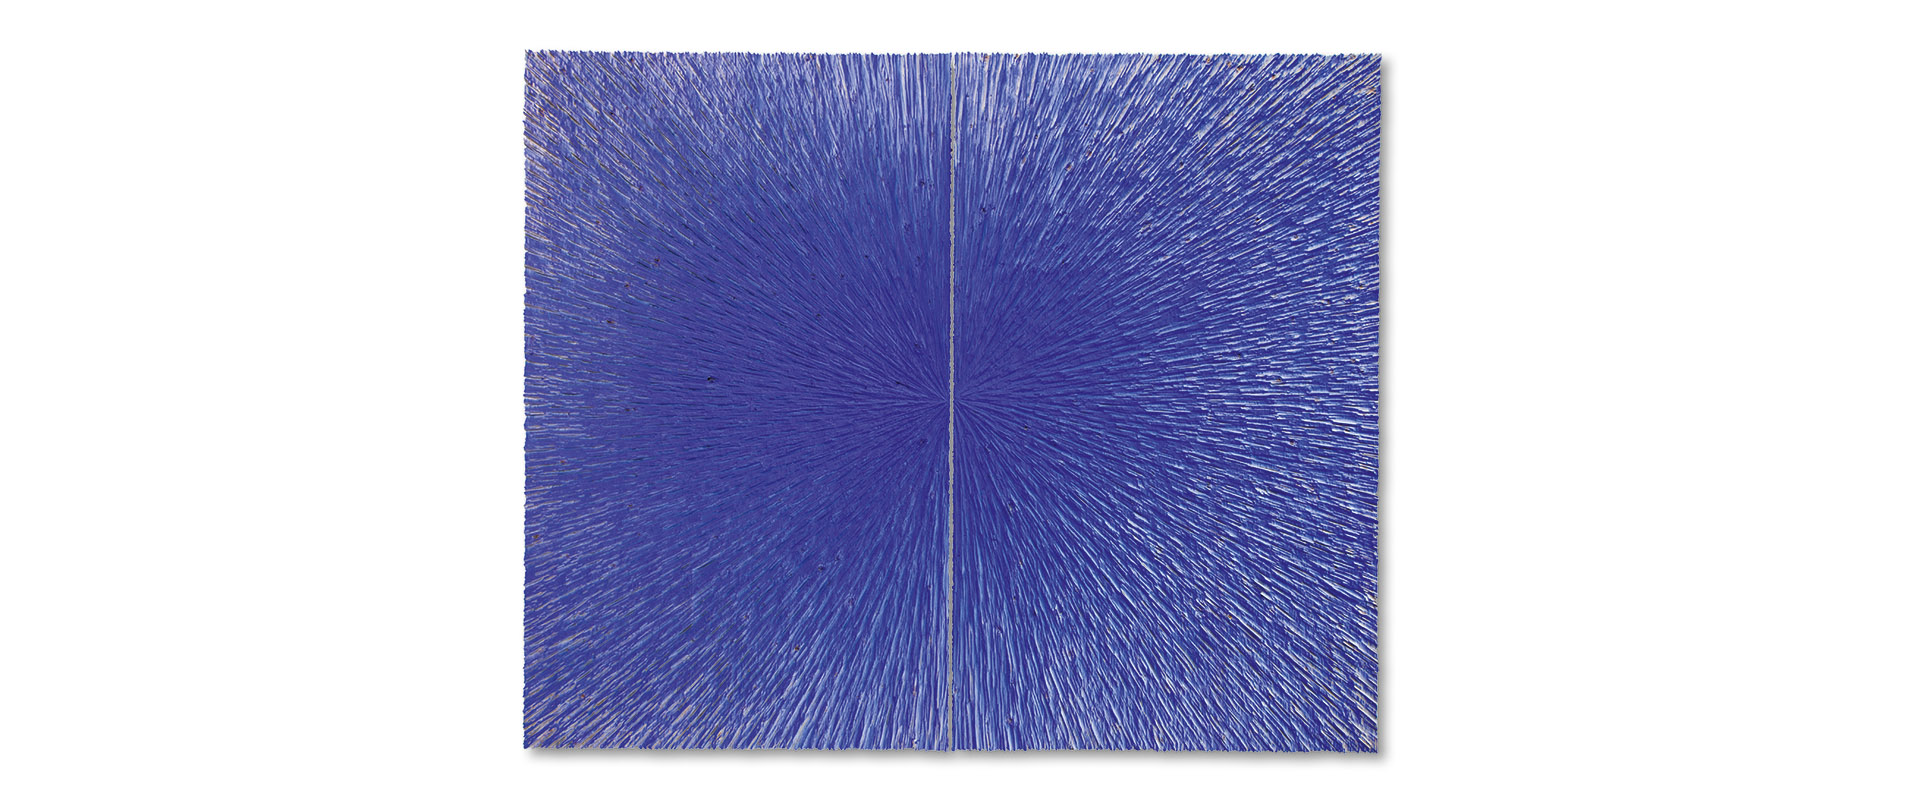 W-TNG – 2020, Fichtenholz, Pigment, 200 x 244 cm